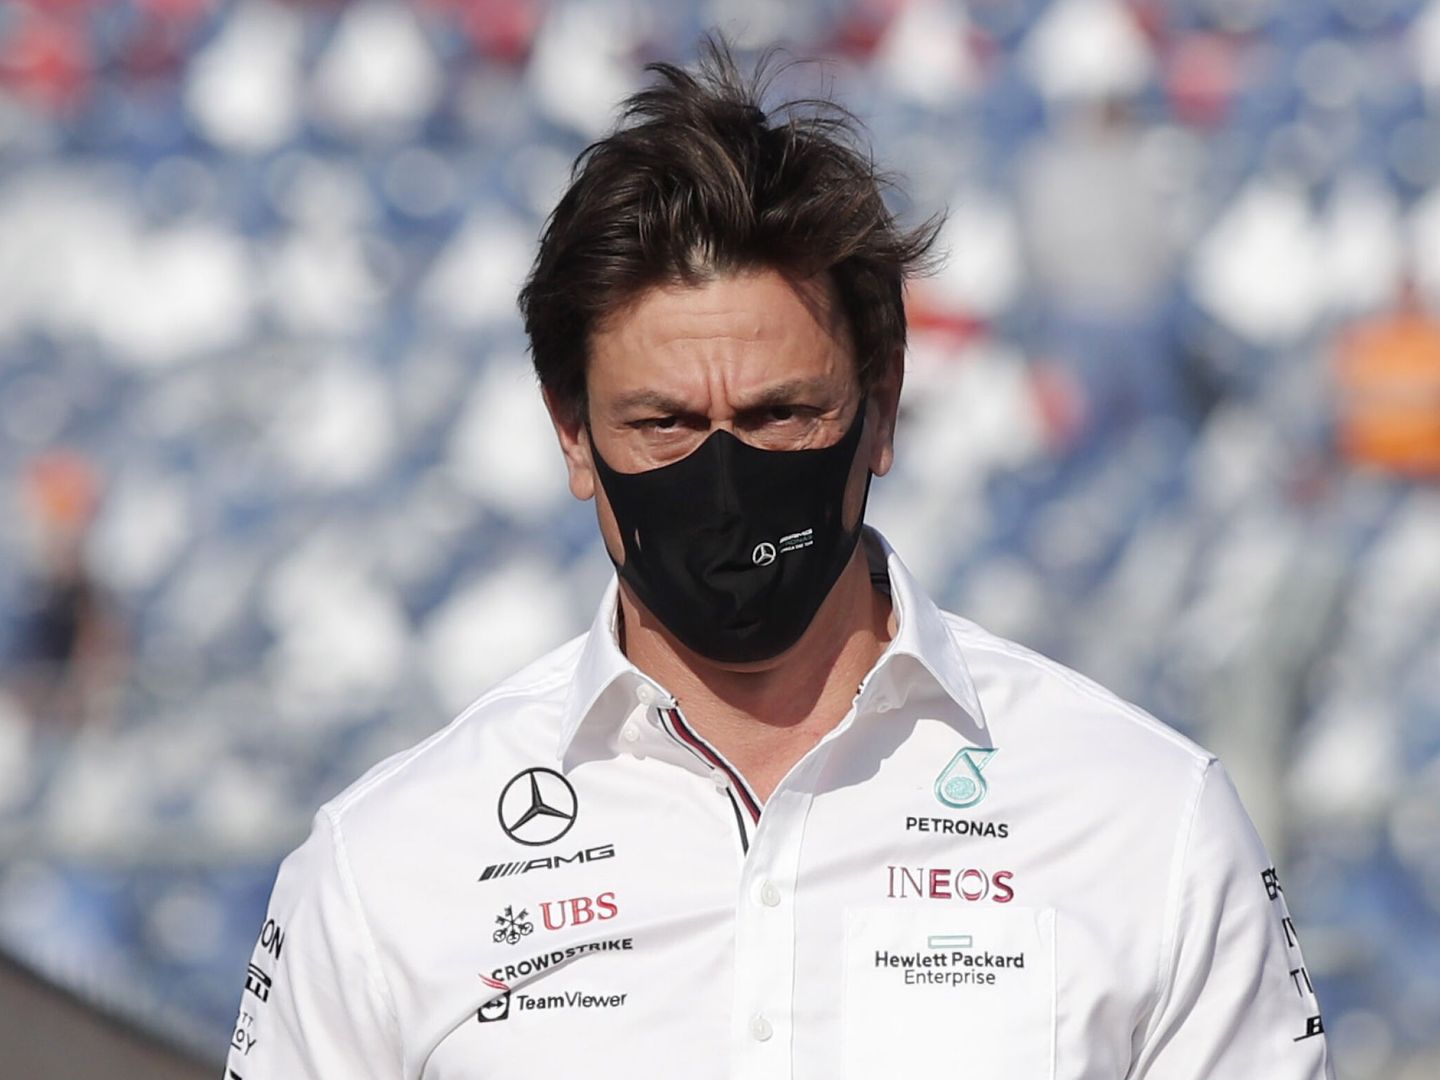 Interesado por el tema antes de llegar a la F1, Toto Wolff ha dado atención al aspecto emocional en la dirección de Mercedes